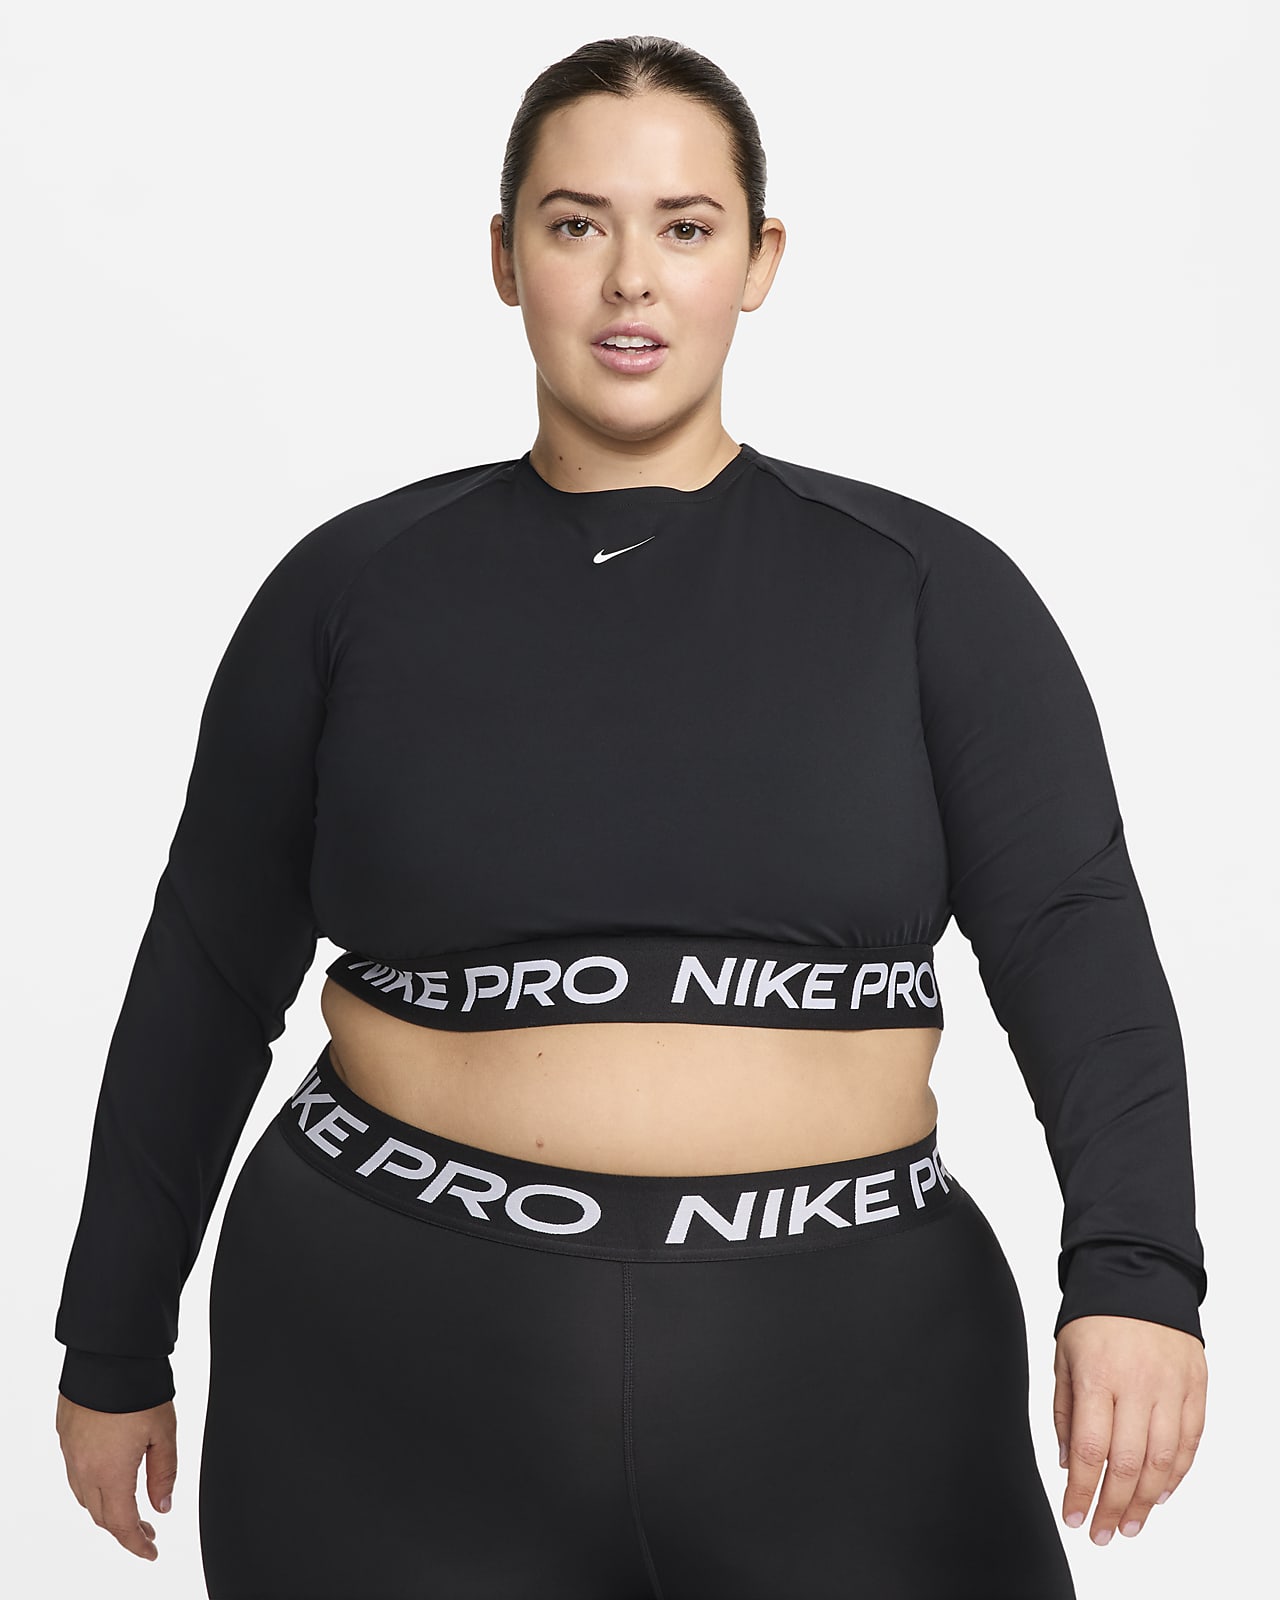 Maglia corta a manica lunga Dri-FIT Nike Pro 365 (Plus size) – Donna